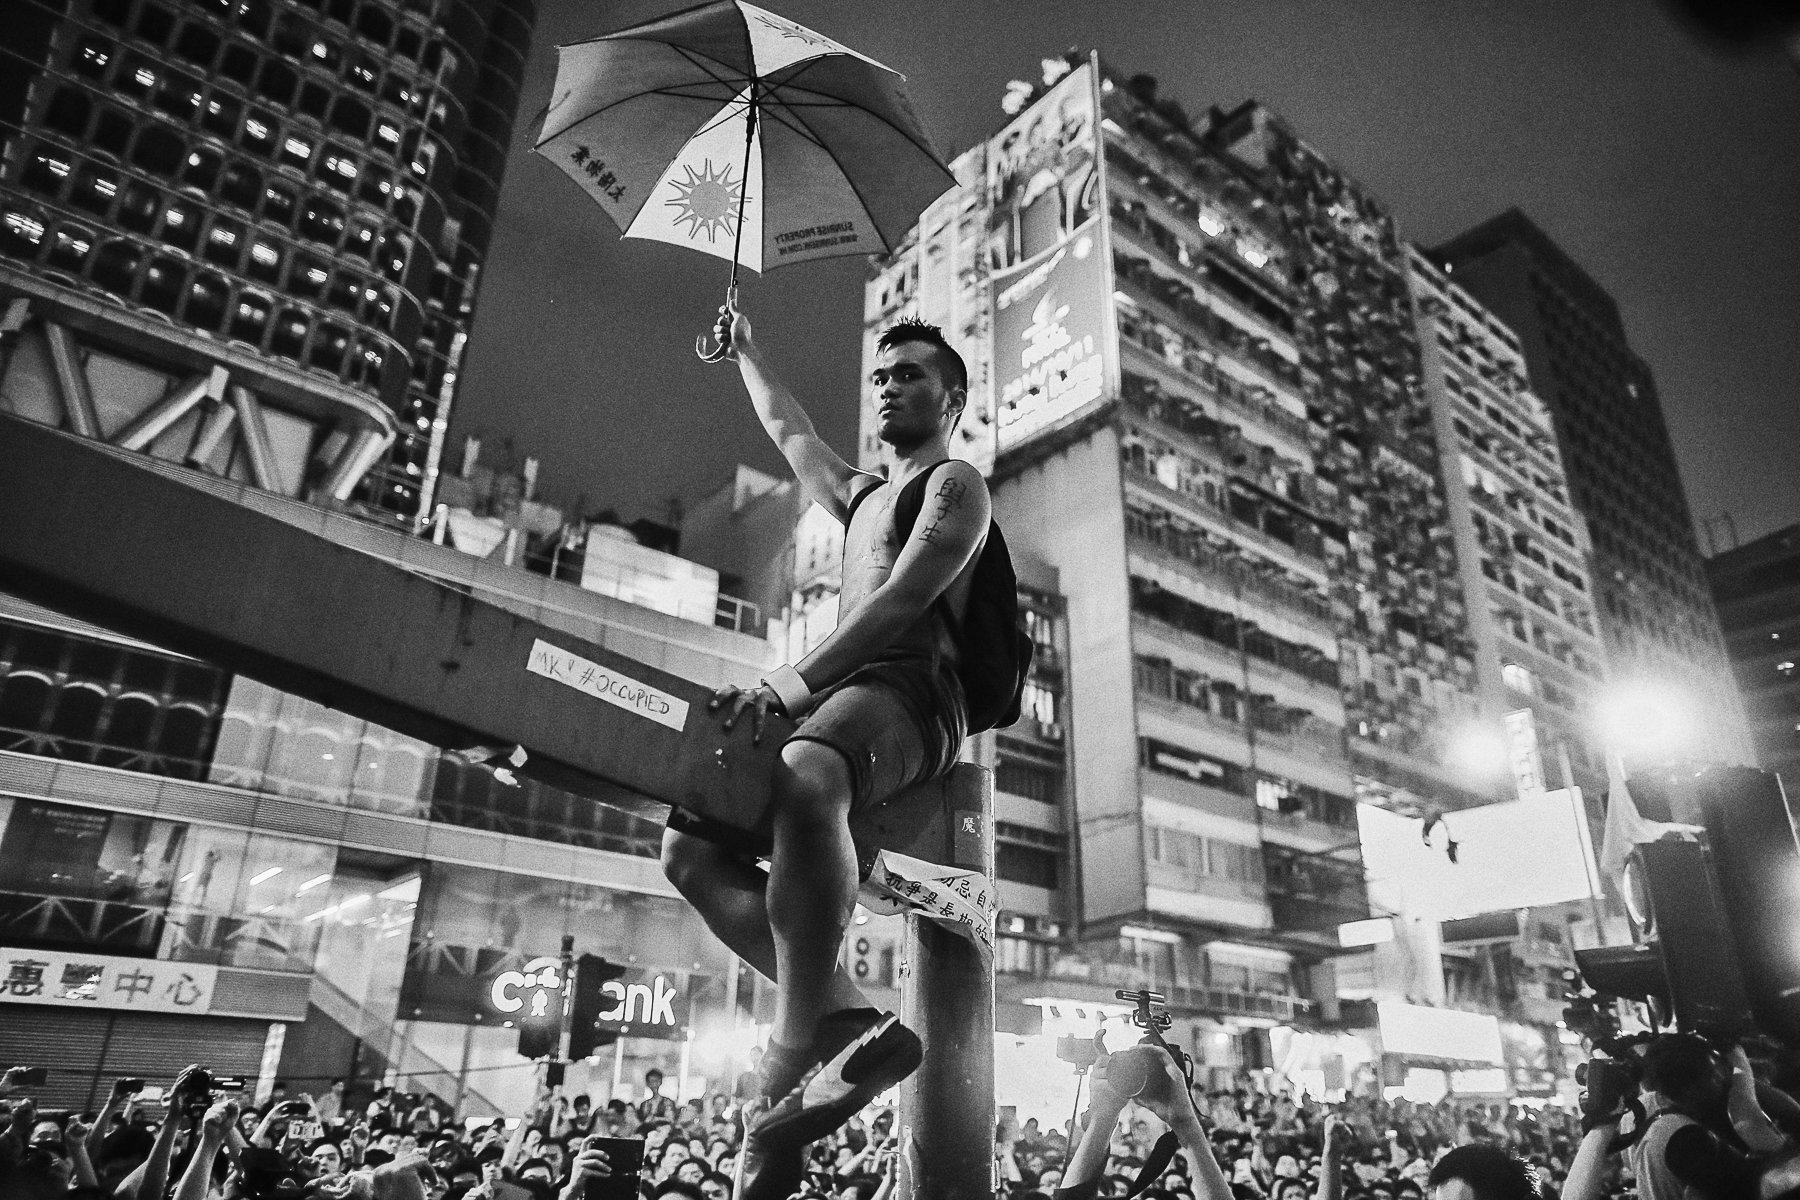 Manifestations pro-démocratique à Hong Kong.A kowloon dans la quartier de Mong Kok, une foule en colère souvent payée par les triades du quartier attaque violement un campement de pro-démocratique, la police procède à des évacuations d\'étudiants sous les insultes des \{quote} anti\{quote}.Un manifestants pro démocratique perché sur une barre en métal est pris à partie par des anti manifestants ,il sera évacué par la police